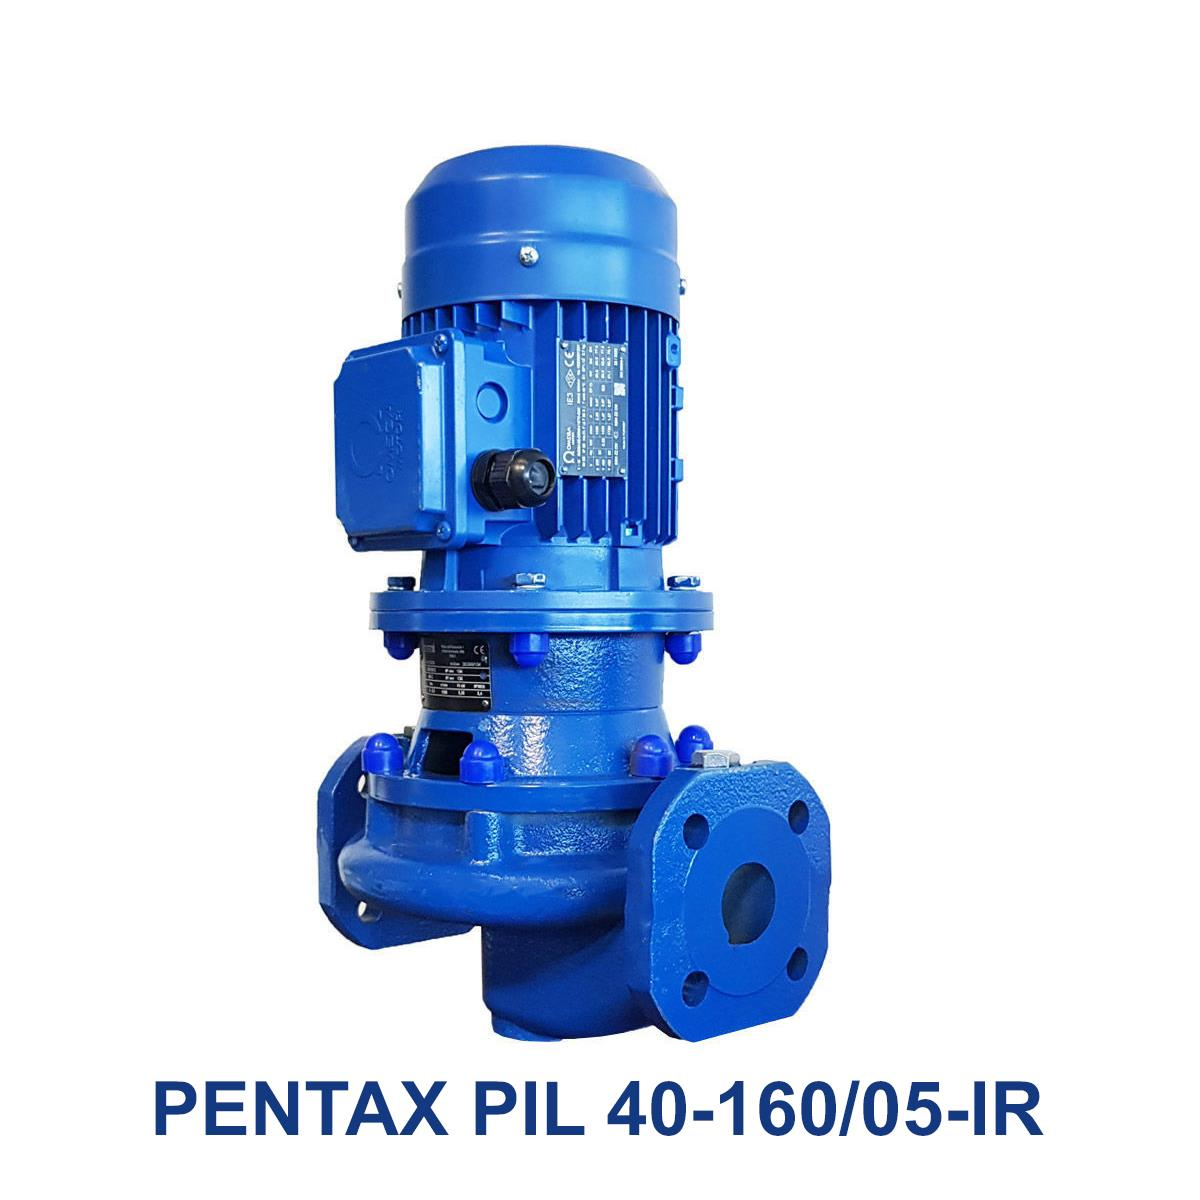 PENTAX-PIL-40-160-05-IR